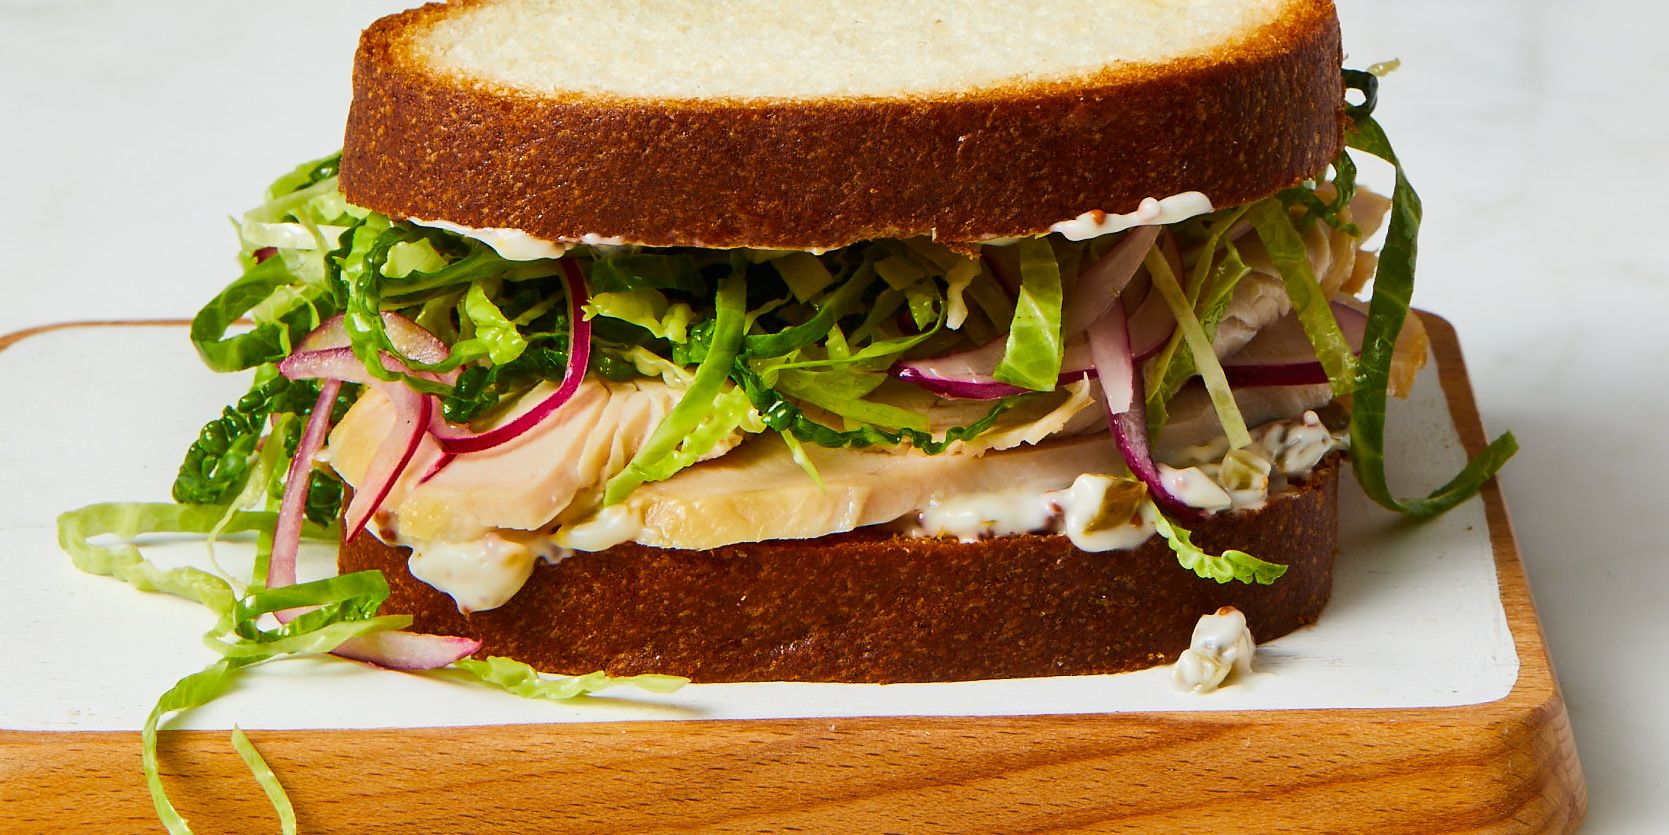 20 Best Turkey Sandwich Recipes Easy Turkey Sandwich Ideas